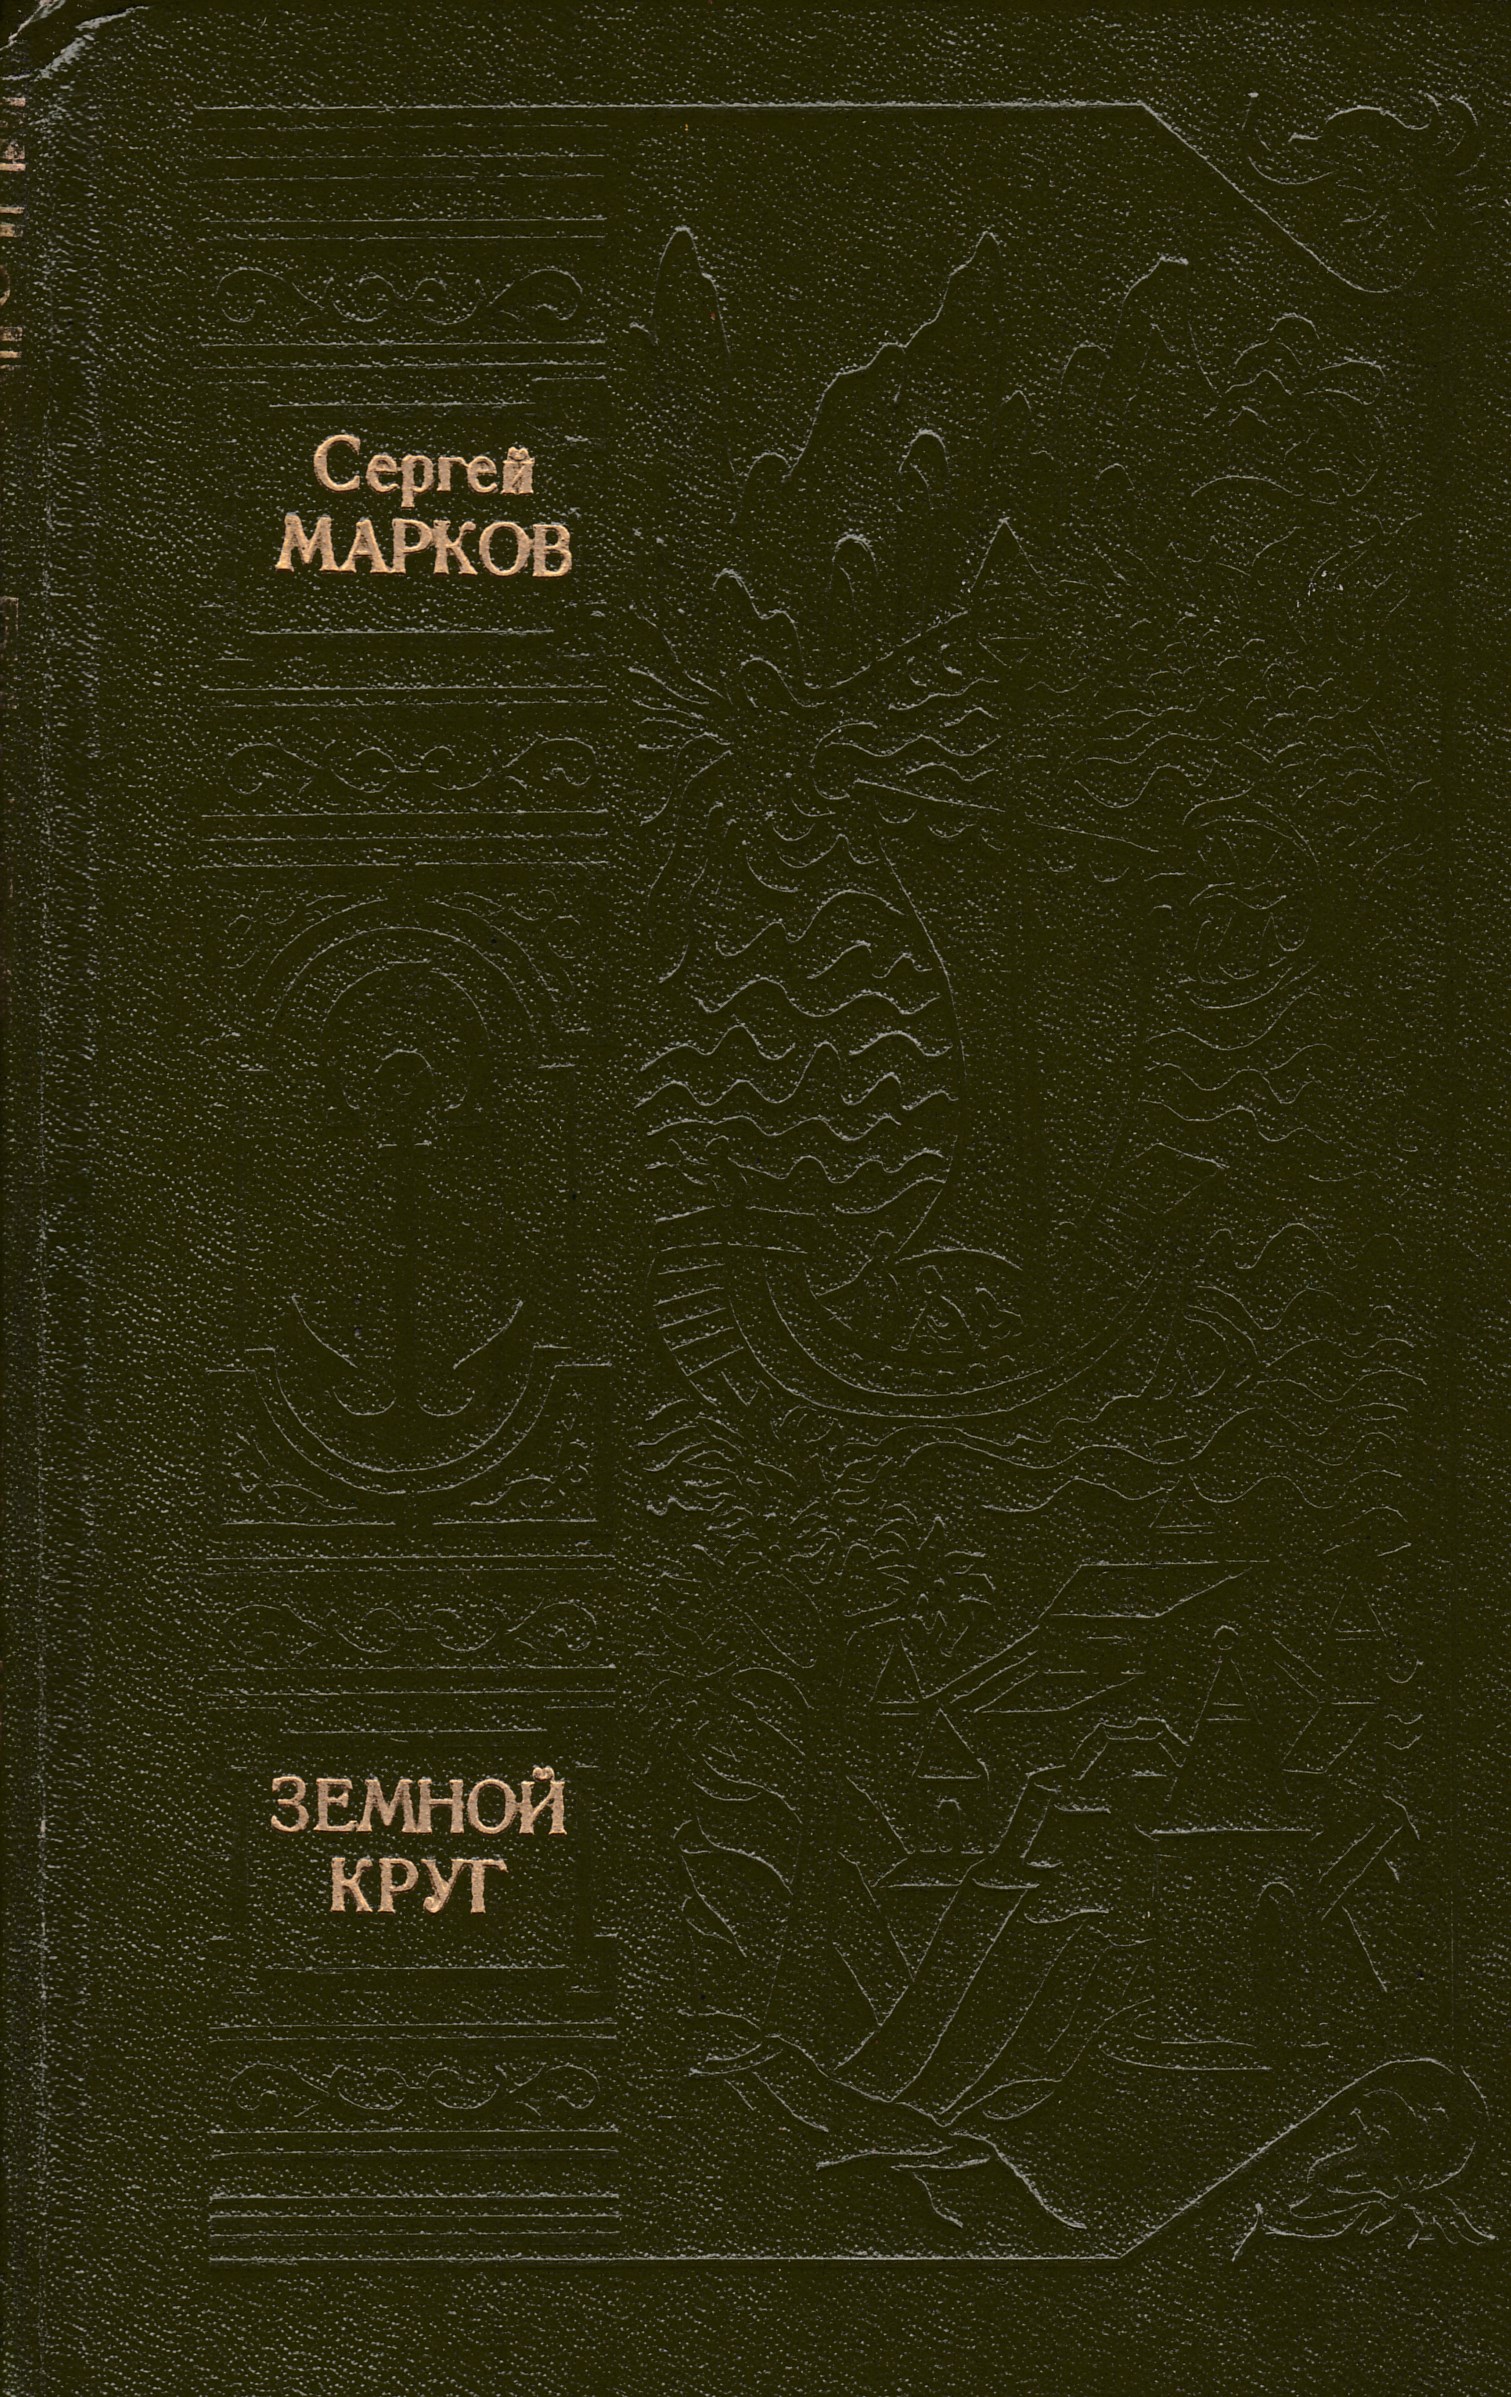 Круг писатели. Сергея Николаевича Маркова (1906–1979). Марков - земной круг.